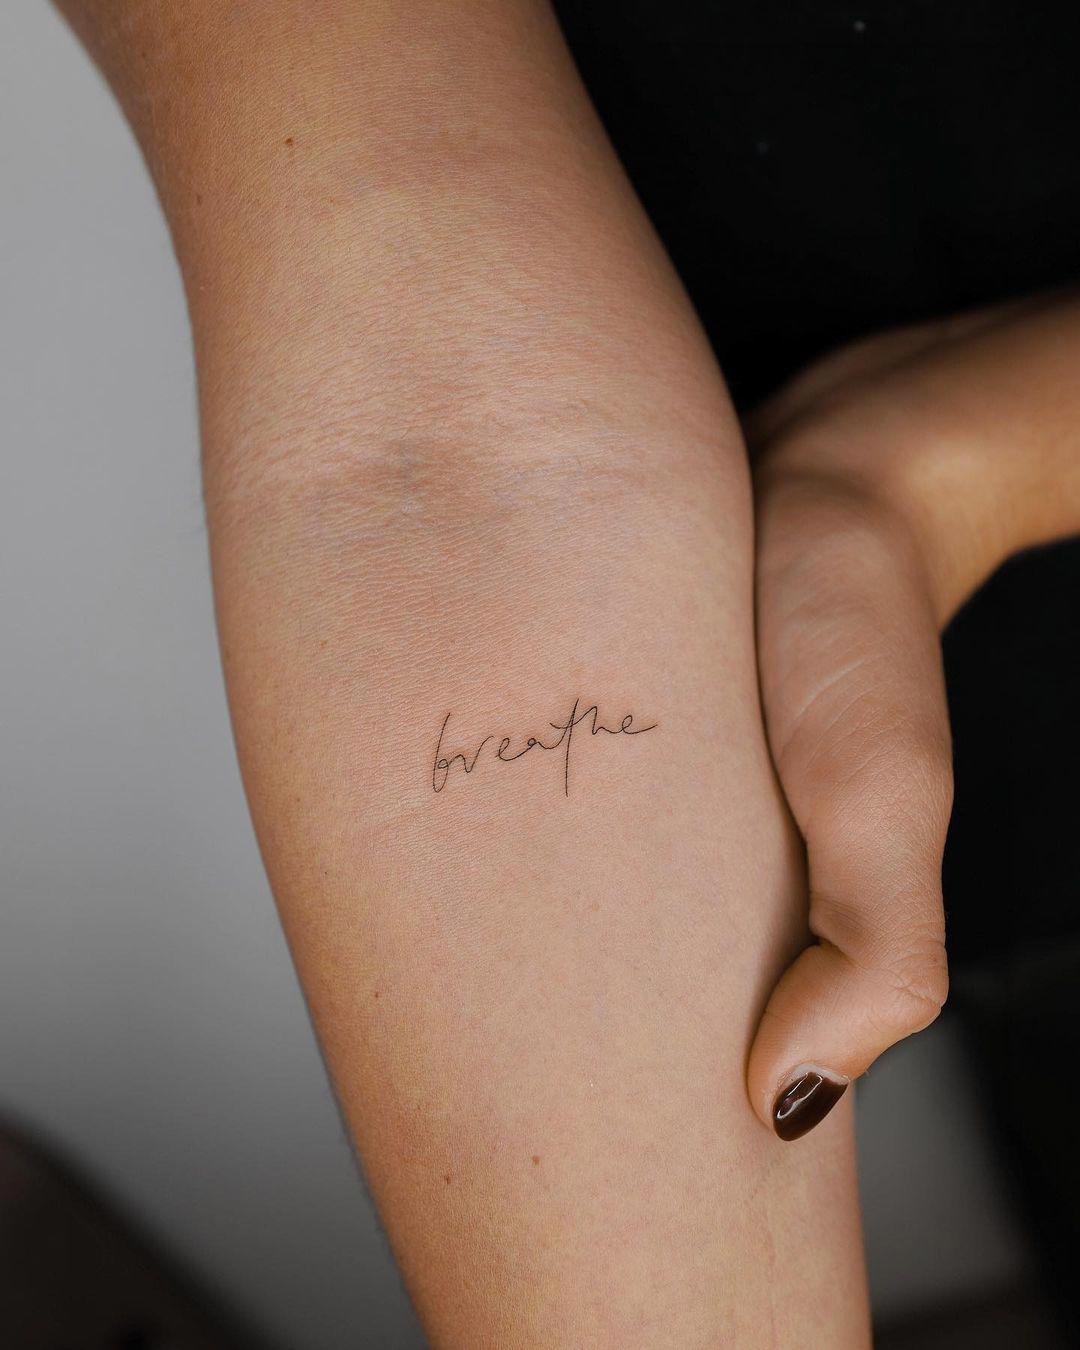 Palabra 'breathe' tatuada en letra fina